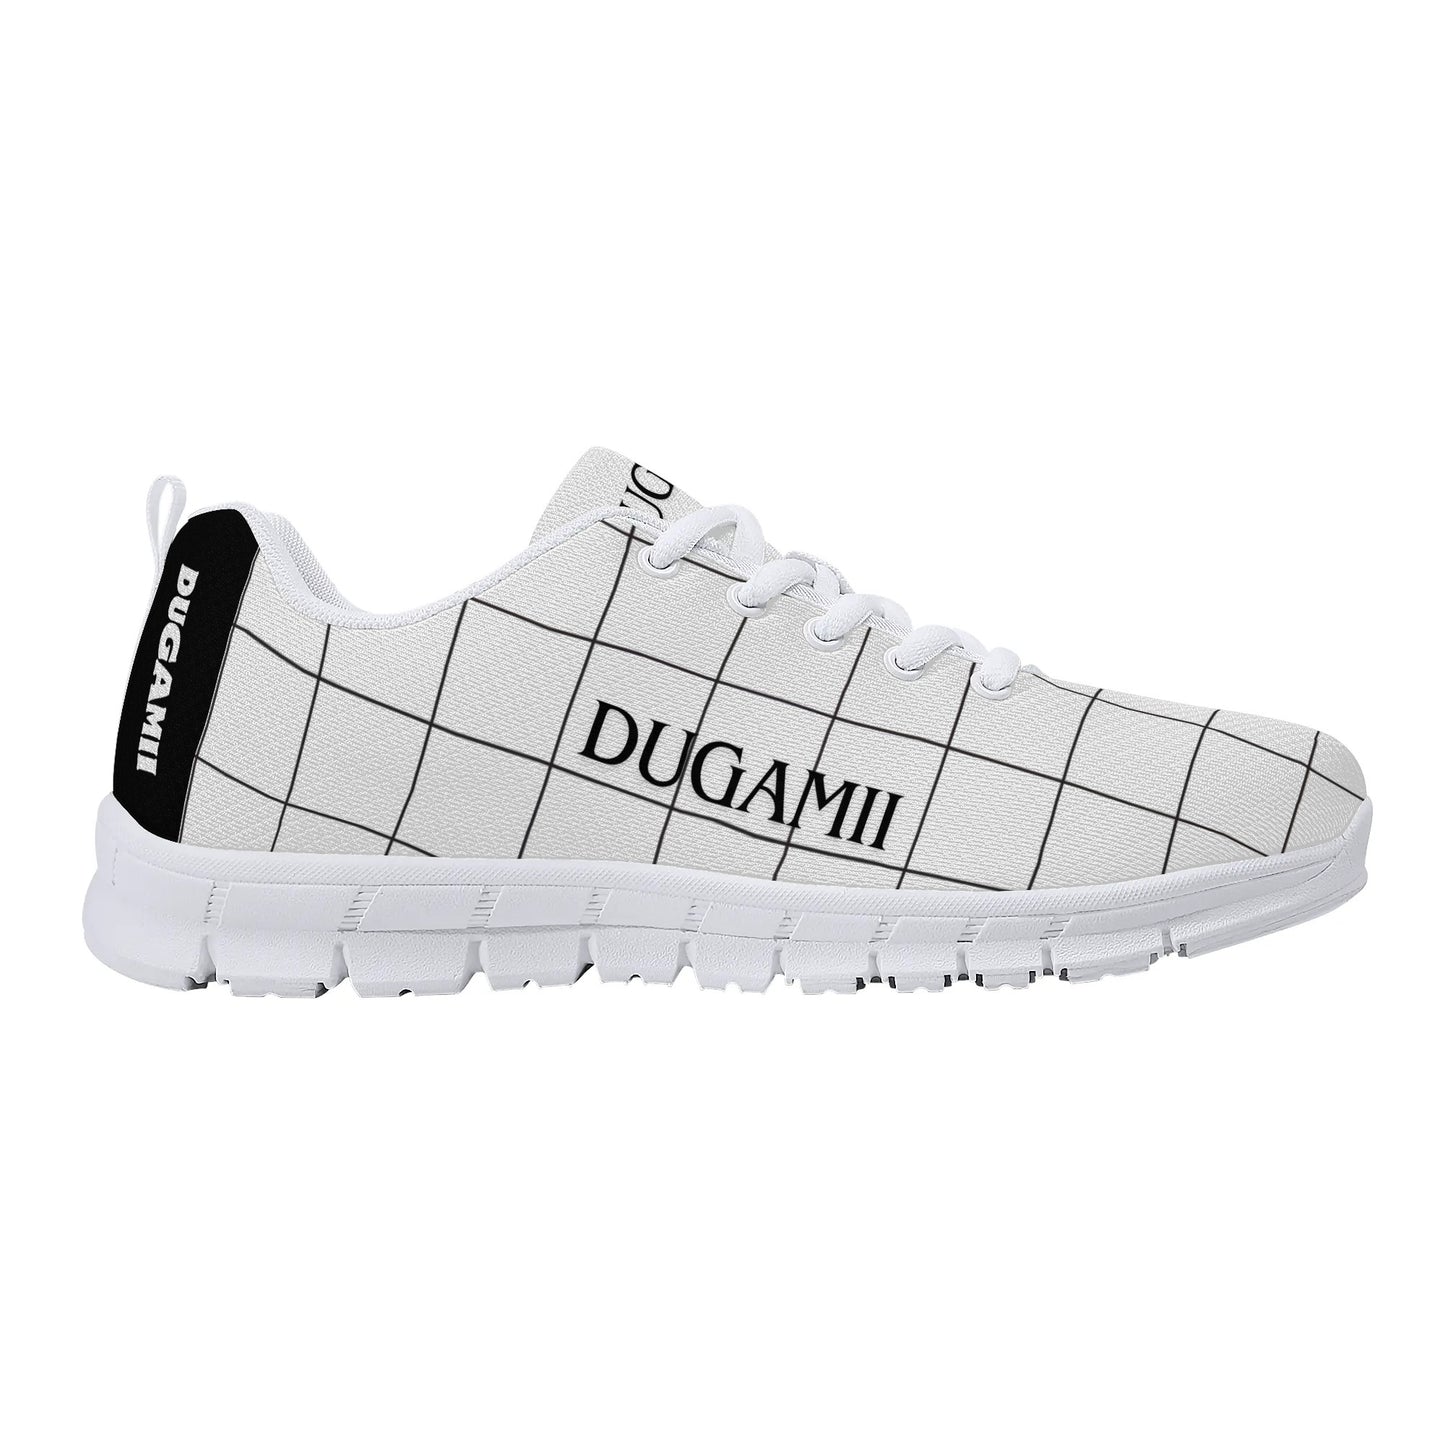 Mens DuGamii Signature White Mesh Running Shoes